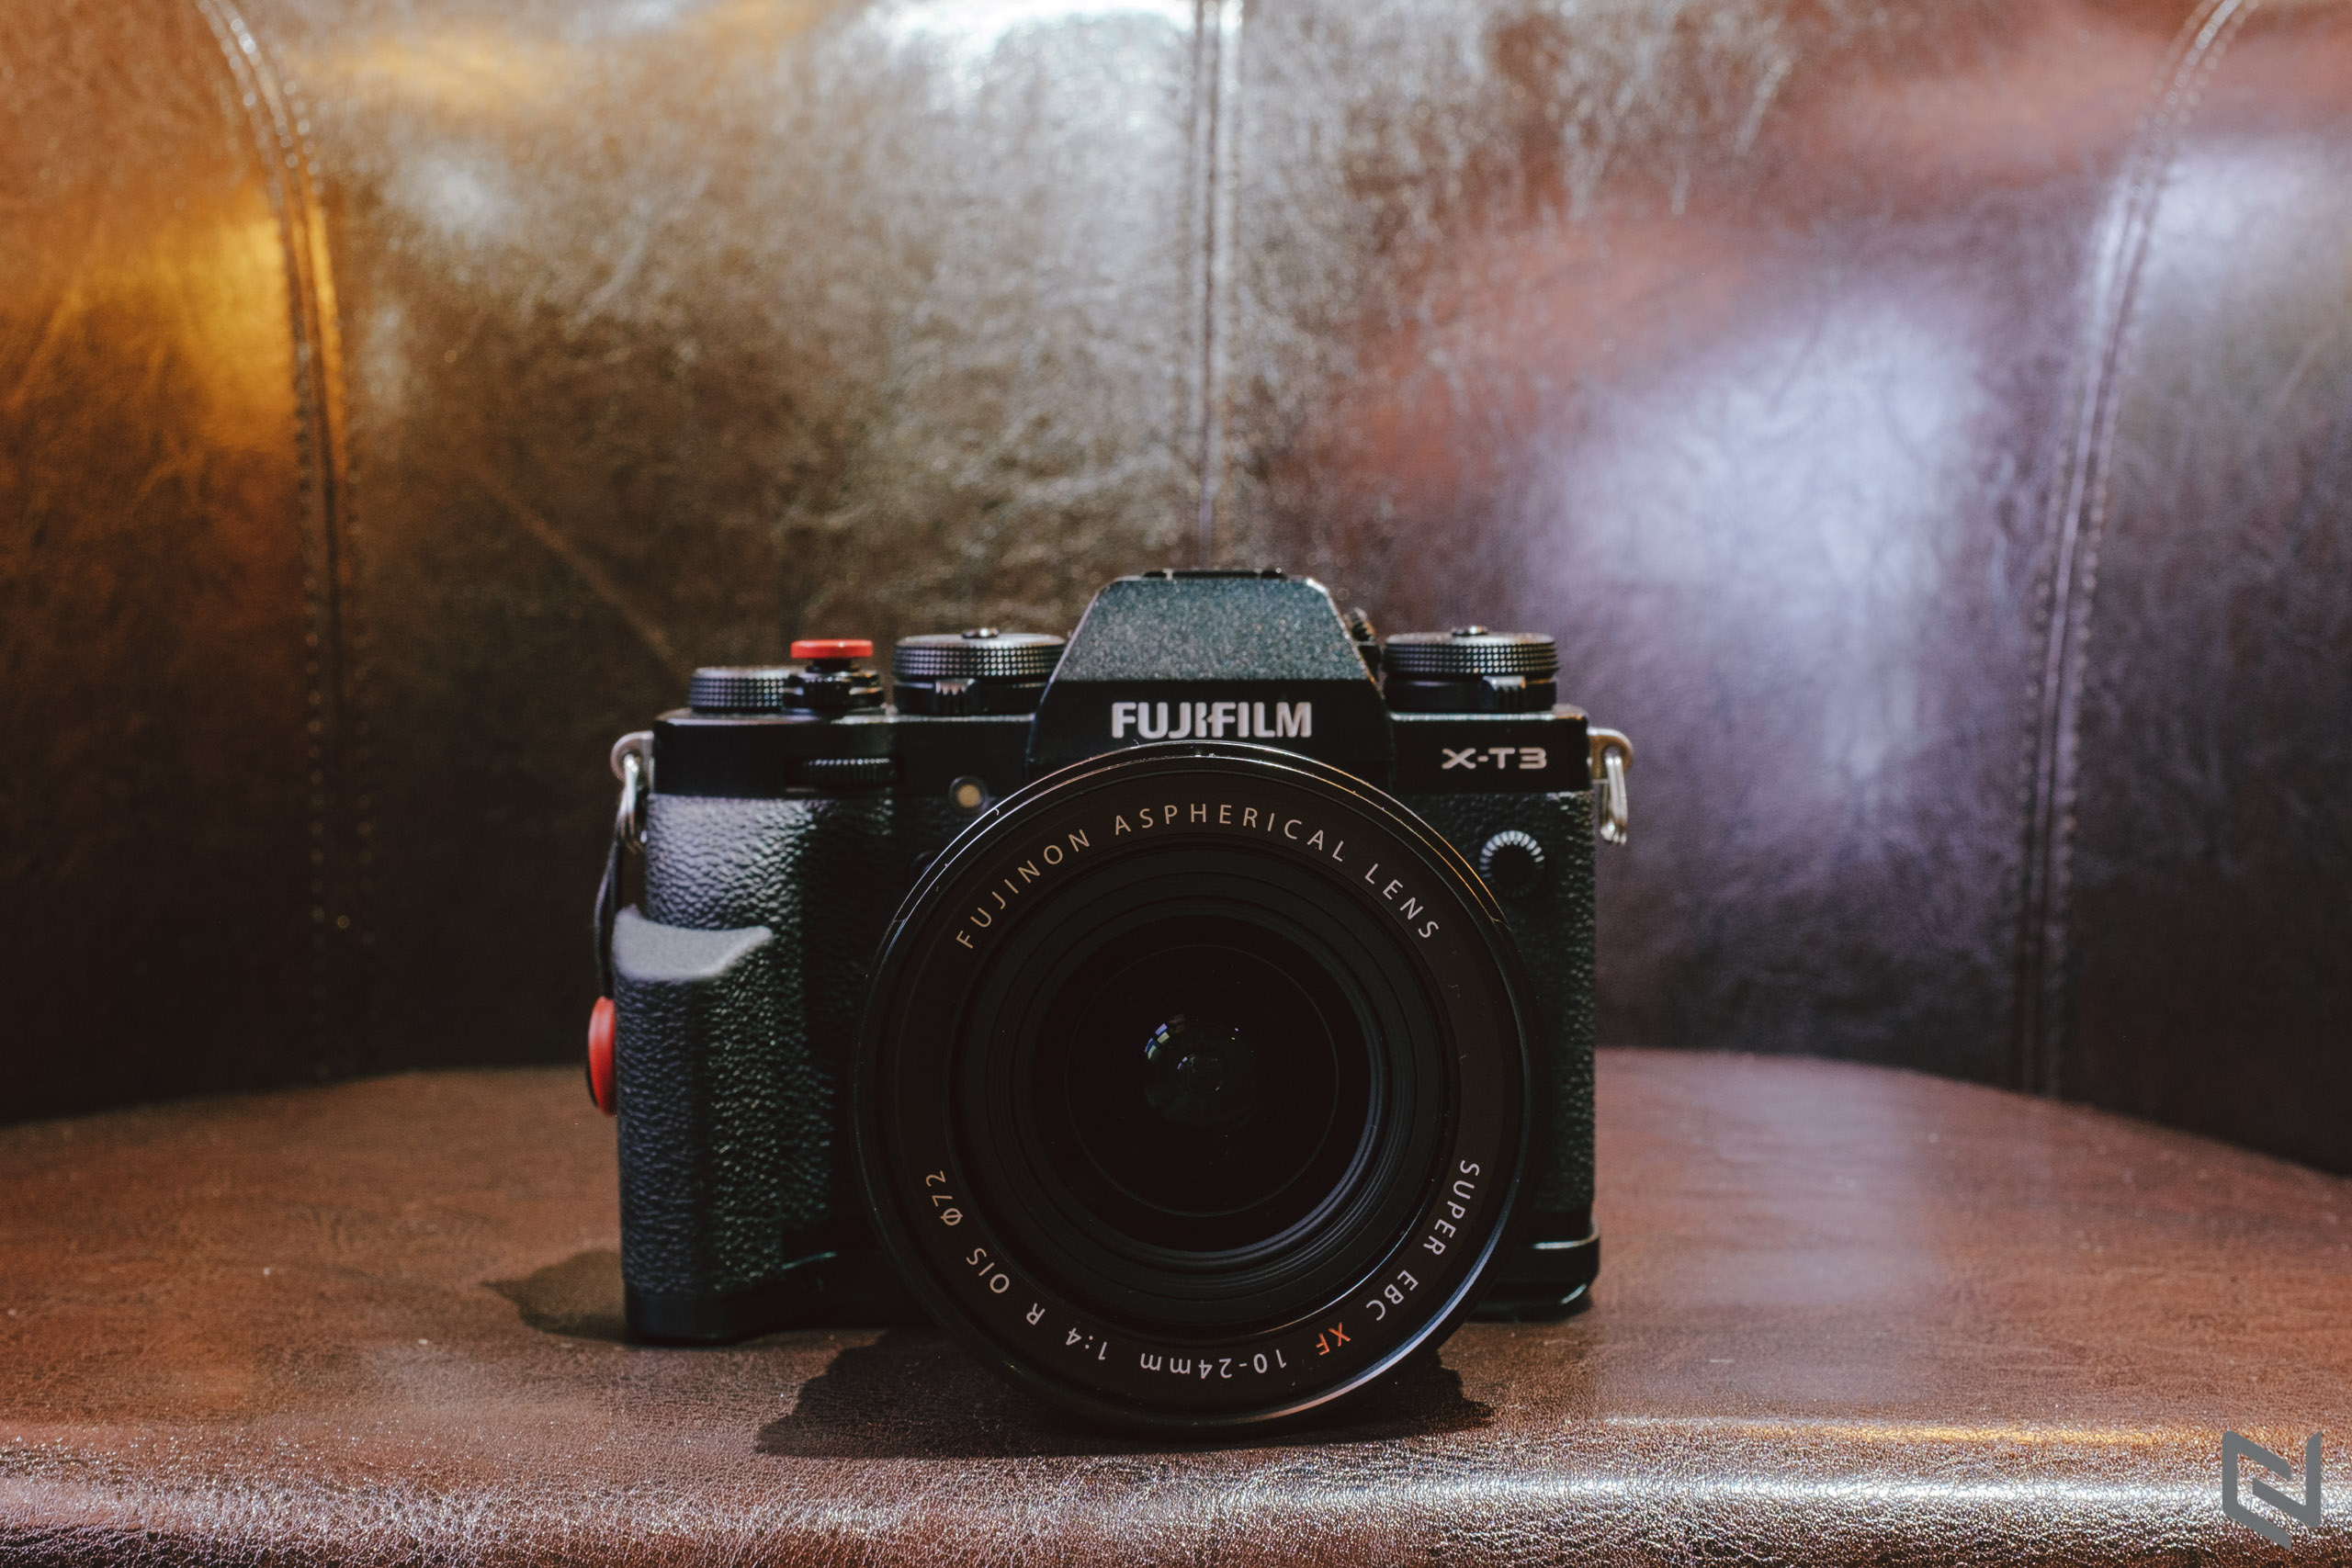 Fujifilm XF 10-24mm F4 đang giảm giá sốc trong tháng, cơ hội tốt để sở hữu ống kính góc siêu rộng cho nhu cầu phong cảnh